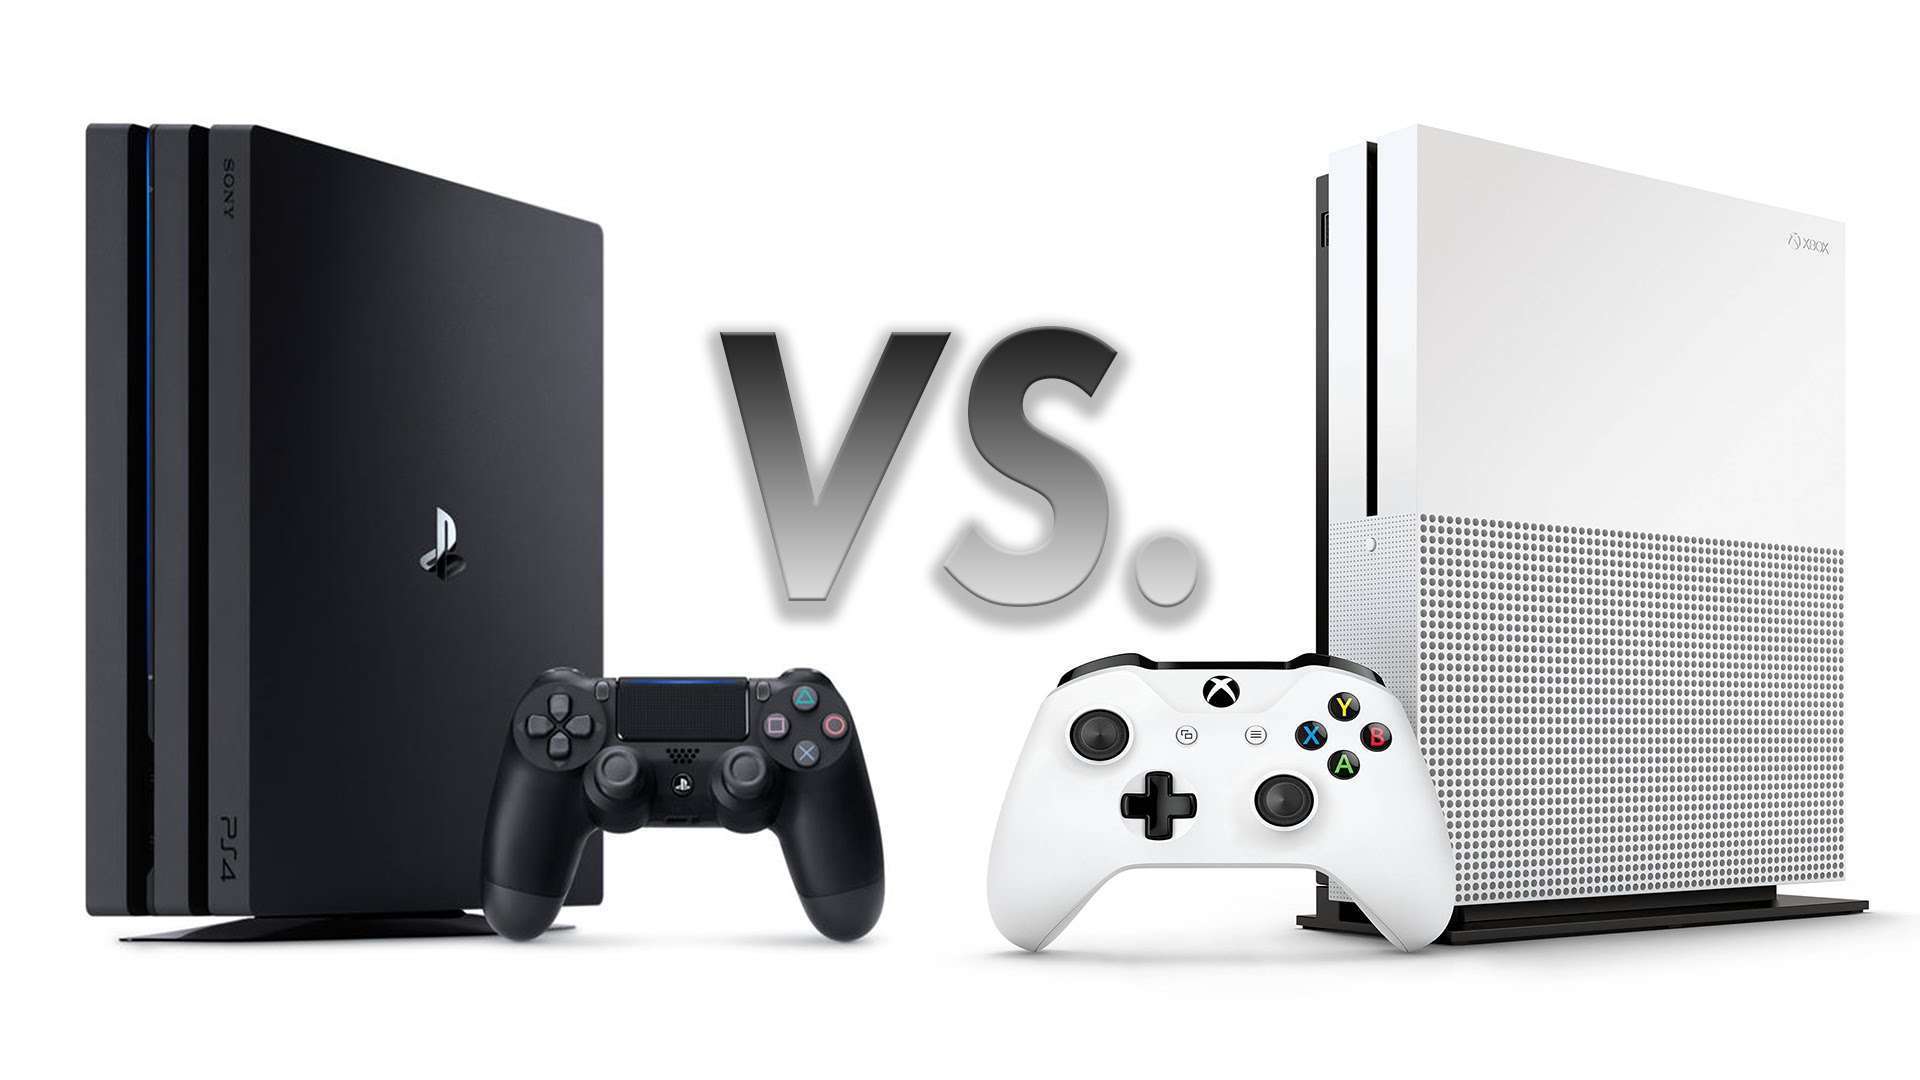 Xbox One ou PS4 Pro - quel est le meilleur ?